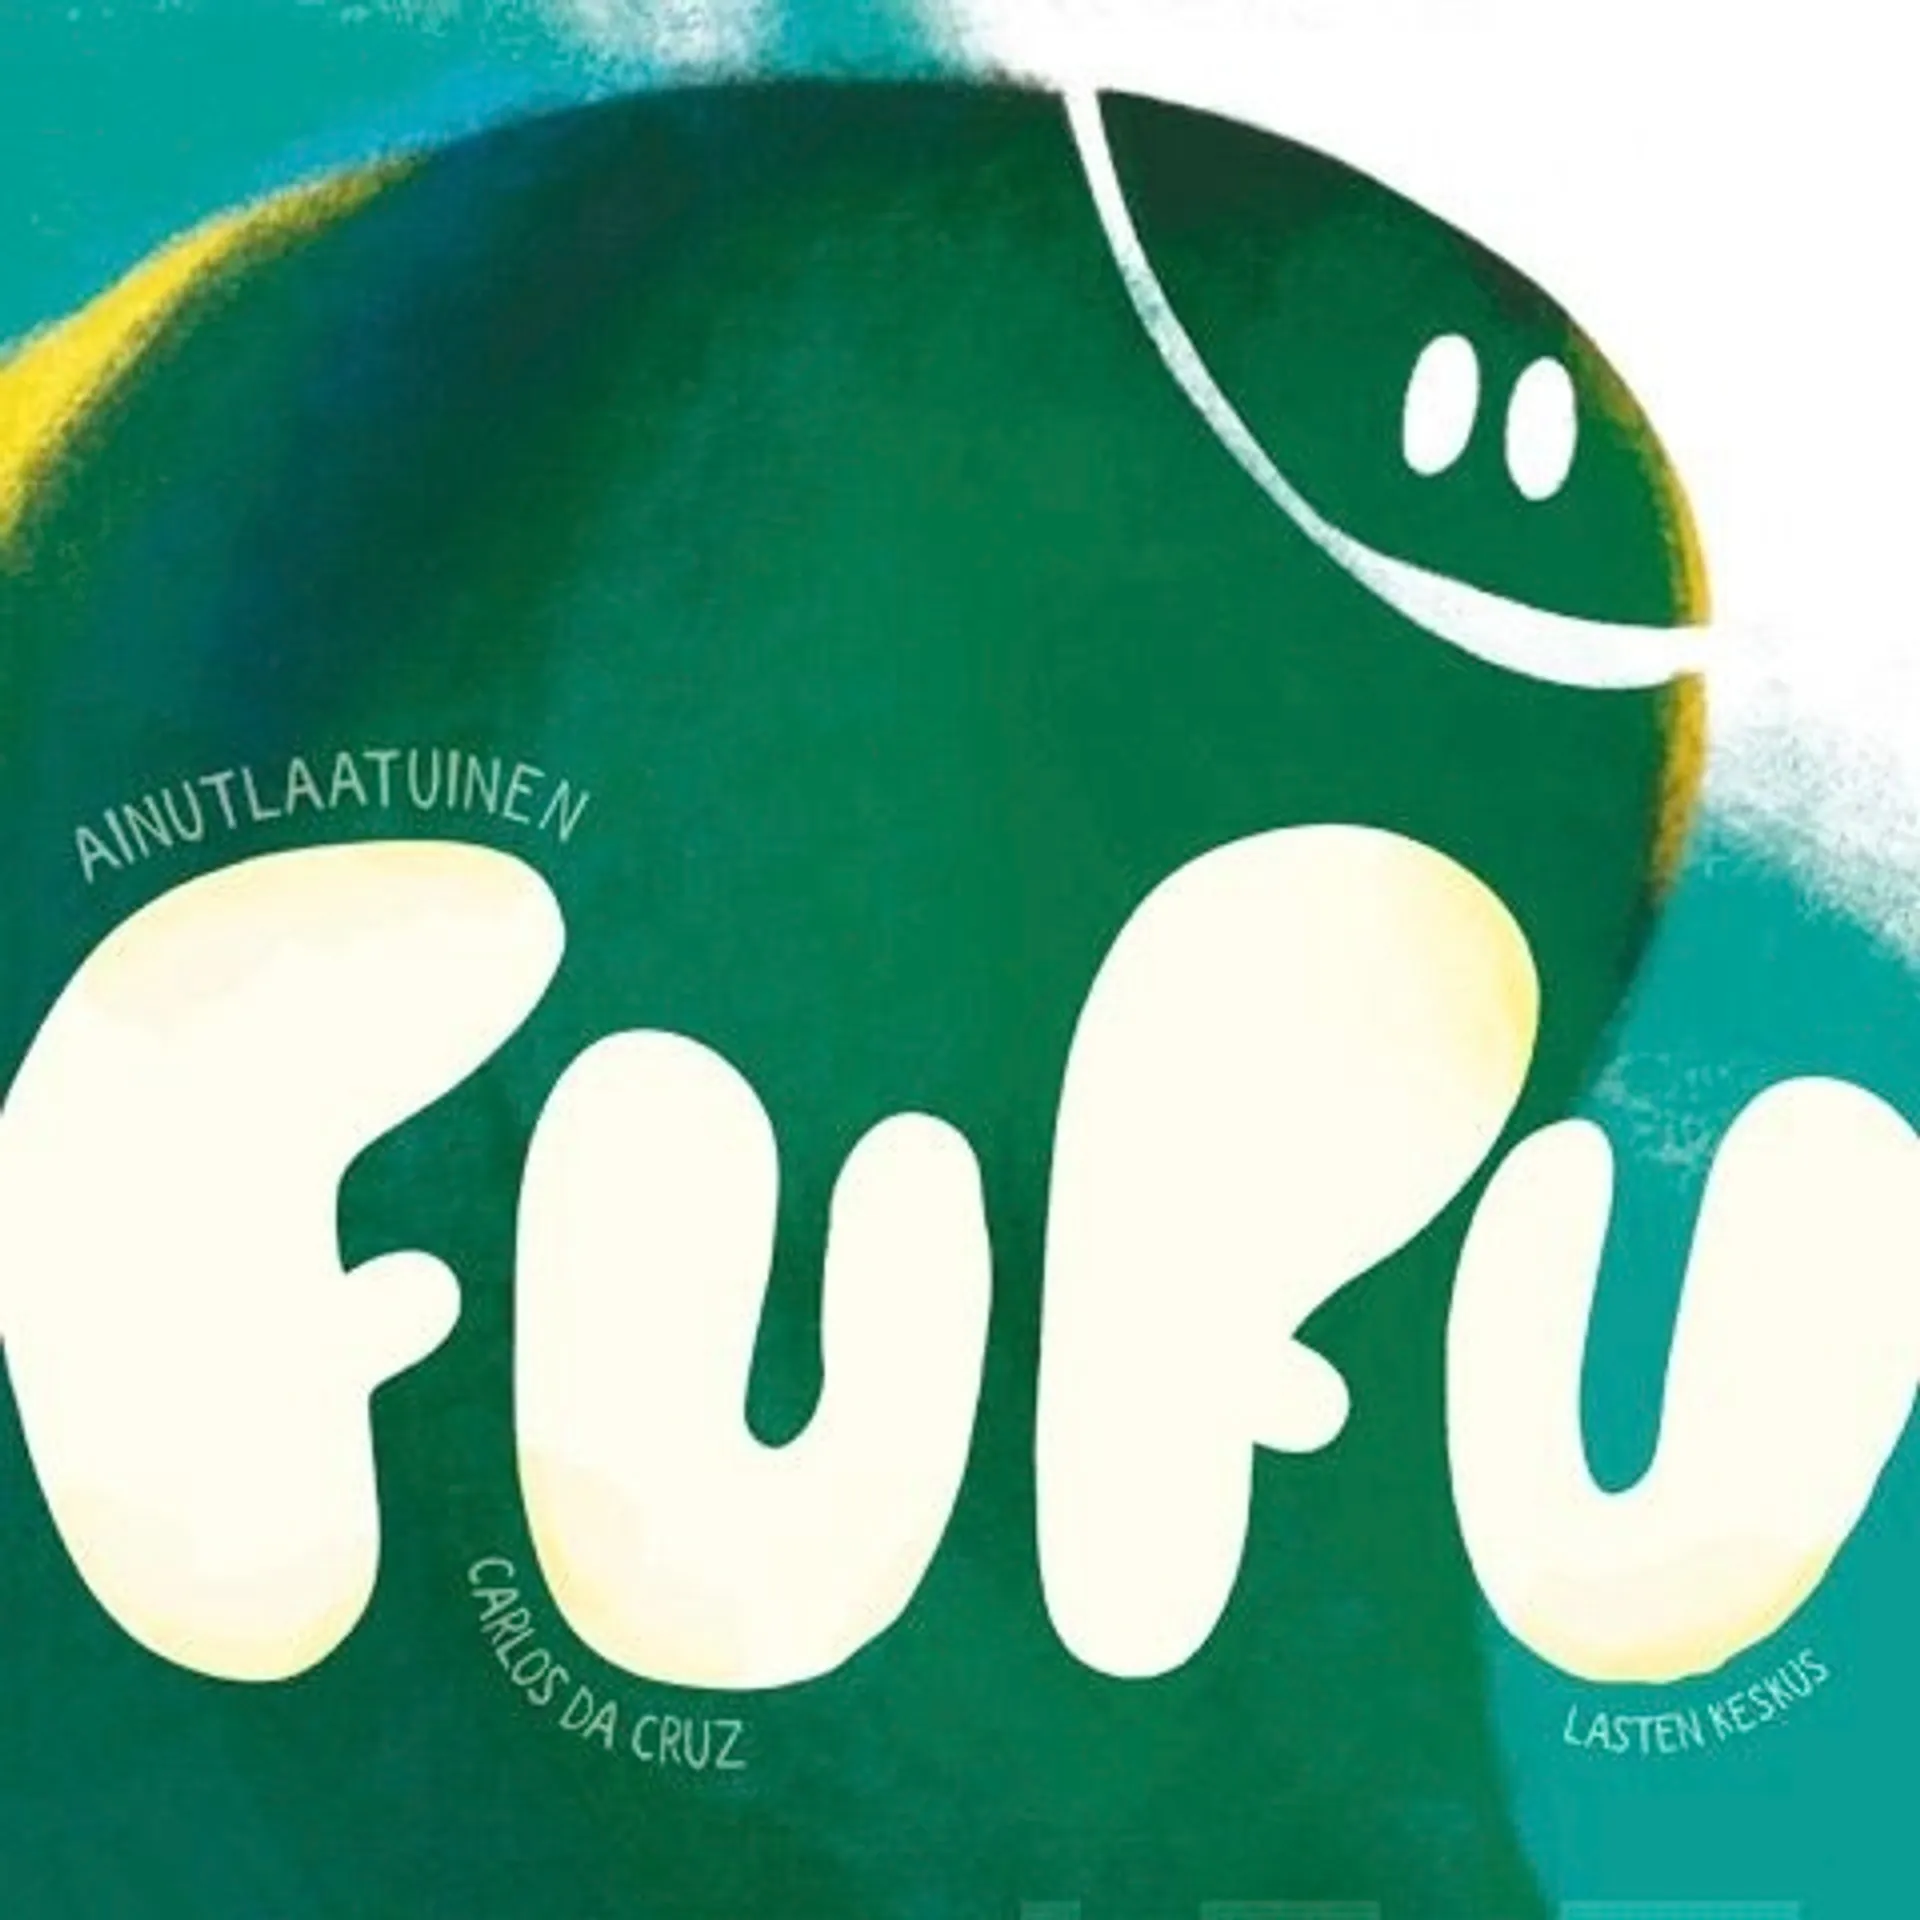 Cruz, Ainutlaatuinen Fufu